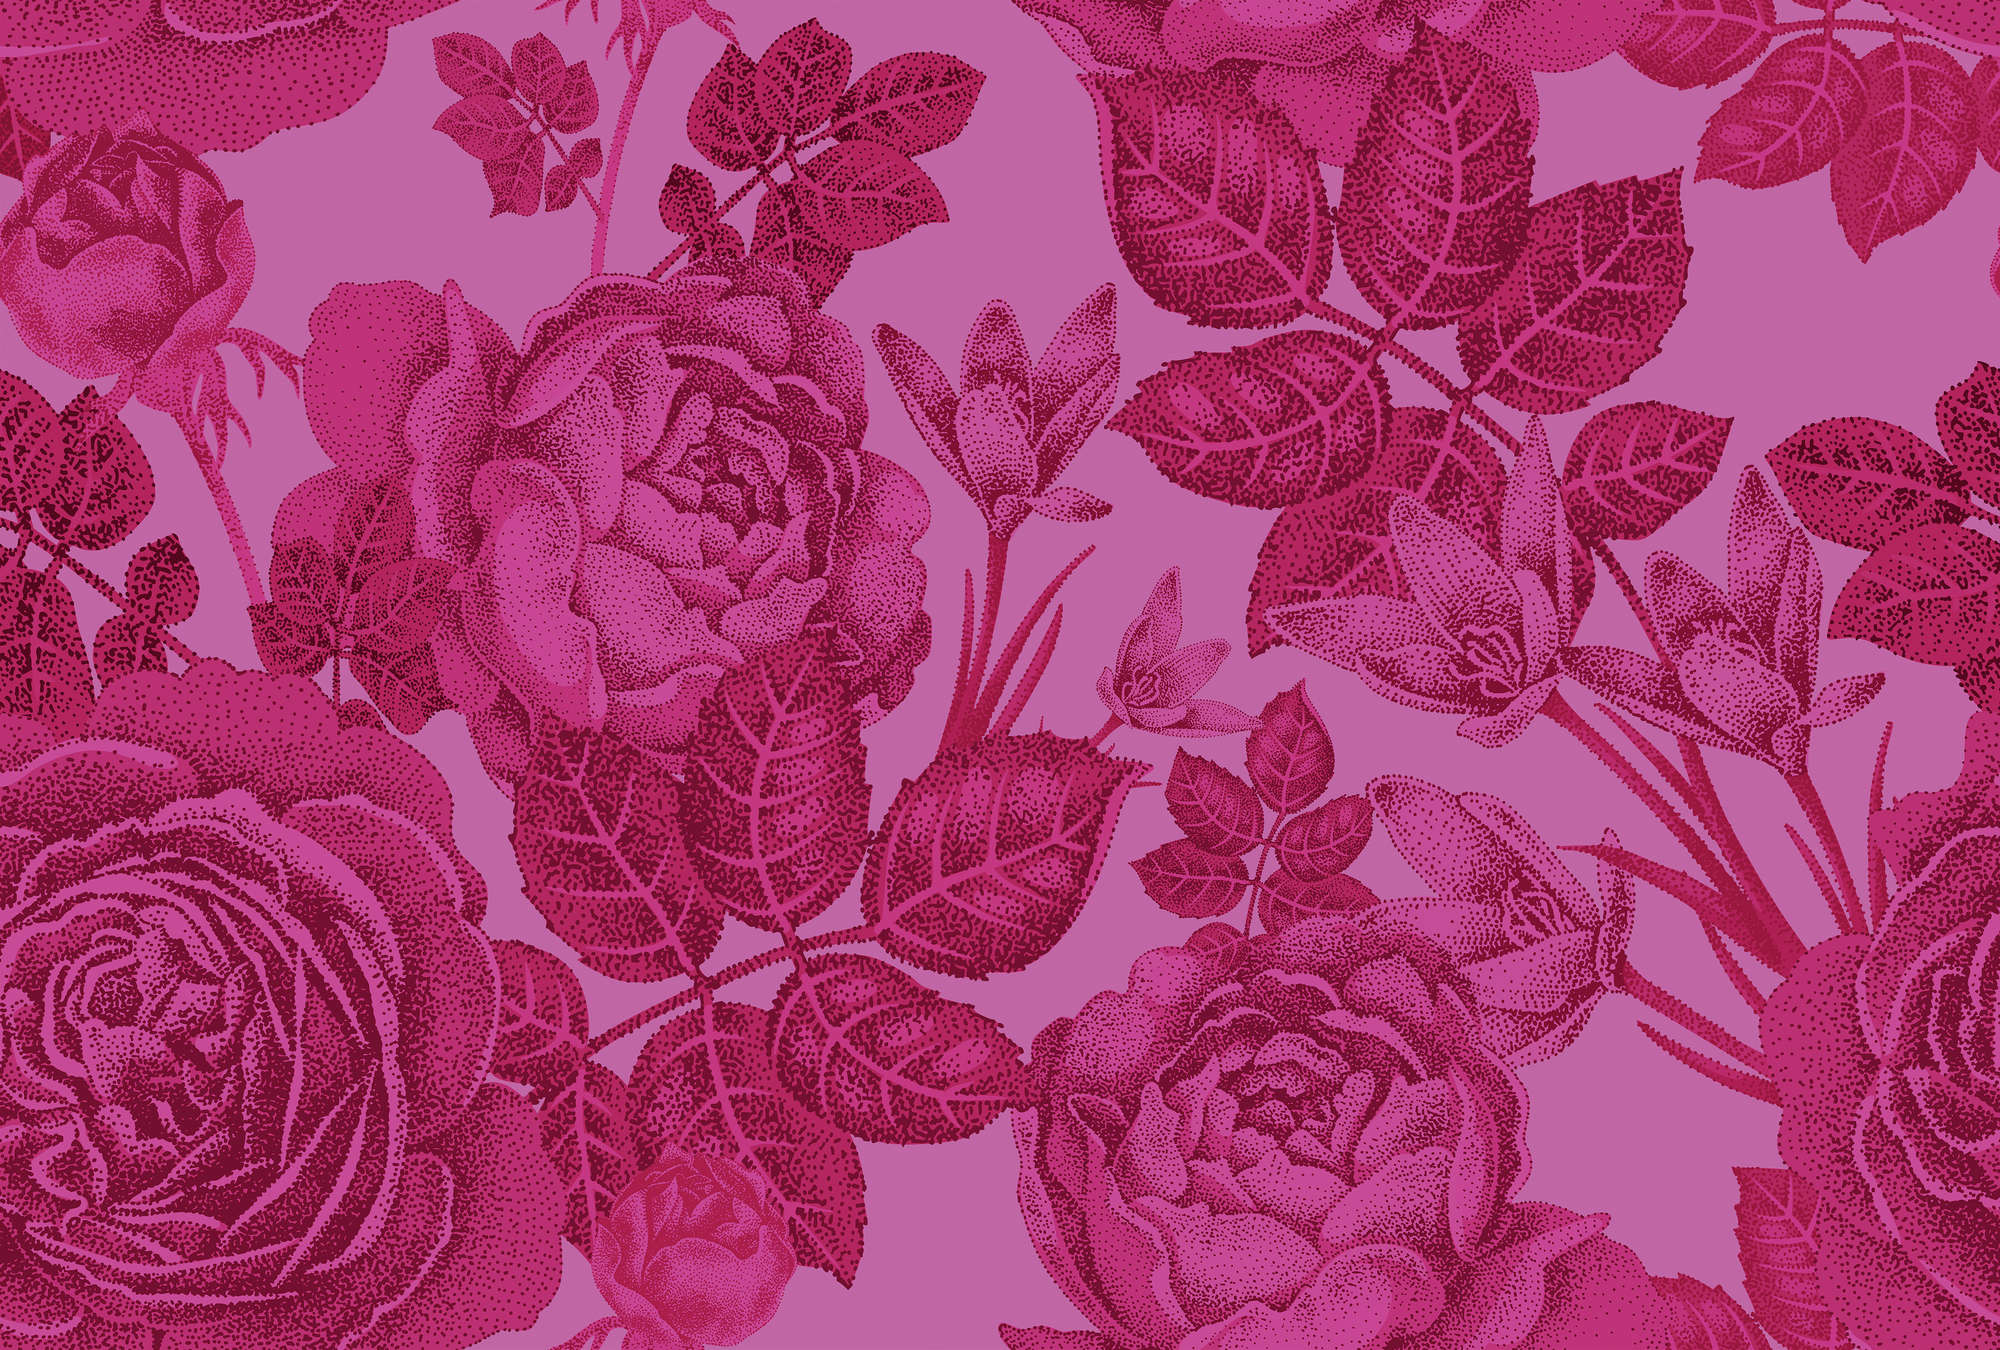             Blumige Fototapete Rosen am Strauch – Rosa
        